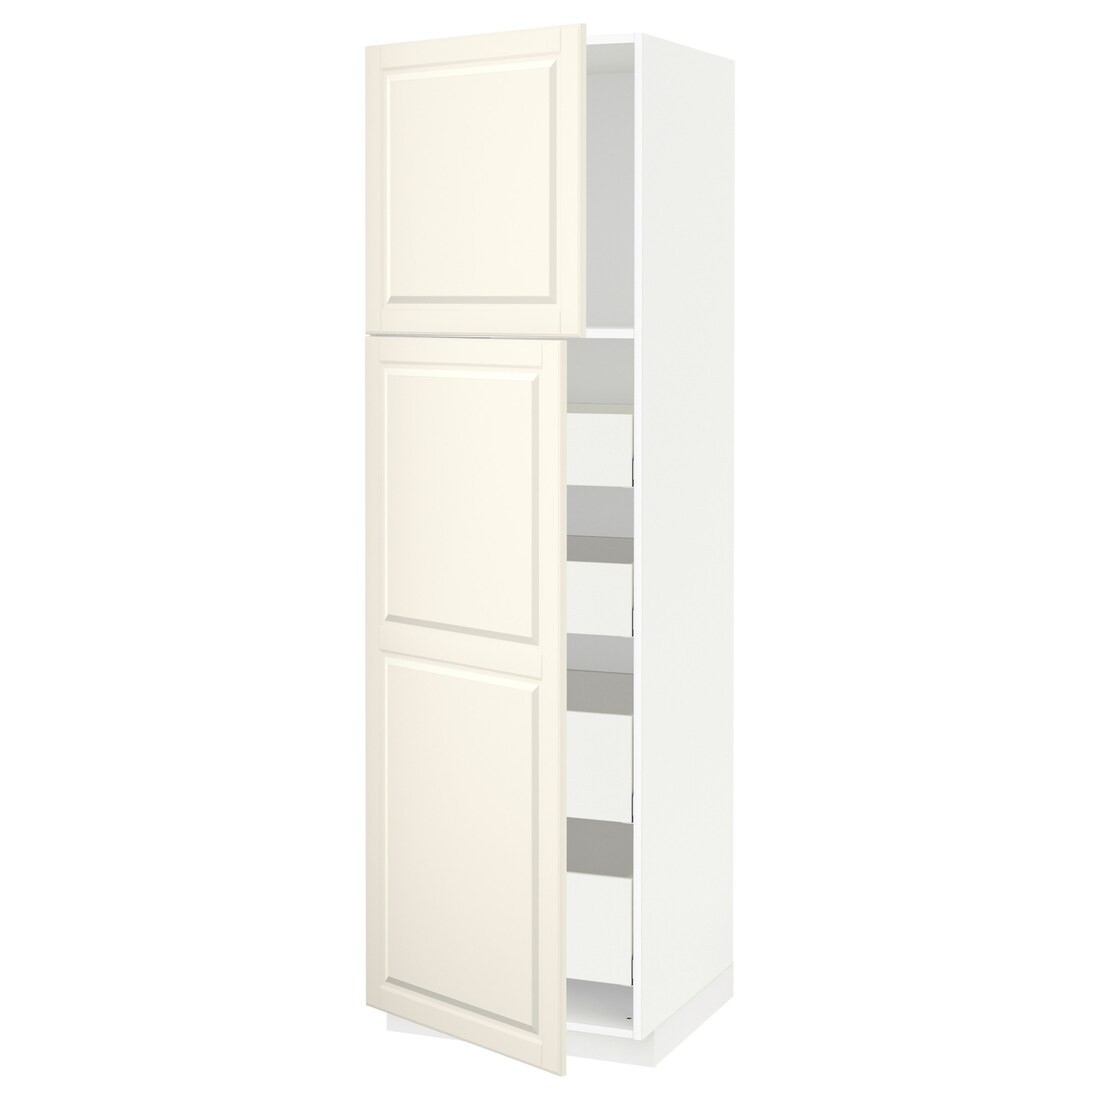 IKEA METOD МЕТОД / MAXIMERA МАКСІМЕРА Шафа висока 2 дверей / 4 шухляди, білий / Bodbyn кремовий, 60x60x200 см 99457335 994.573.35